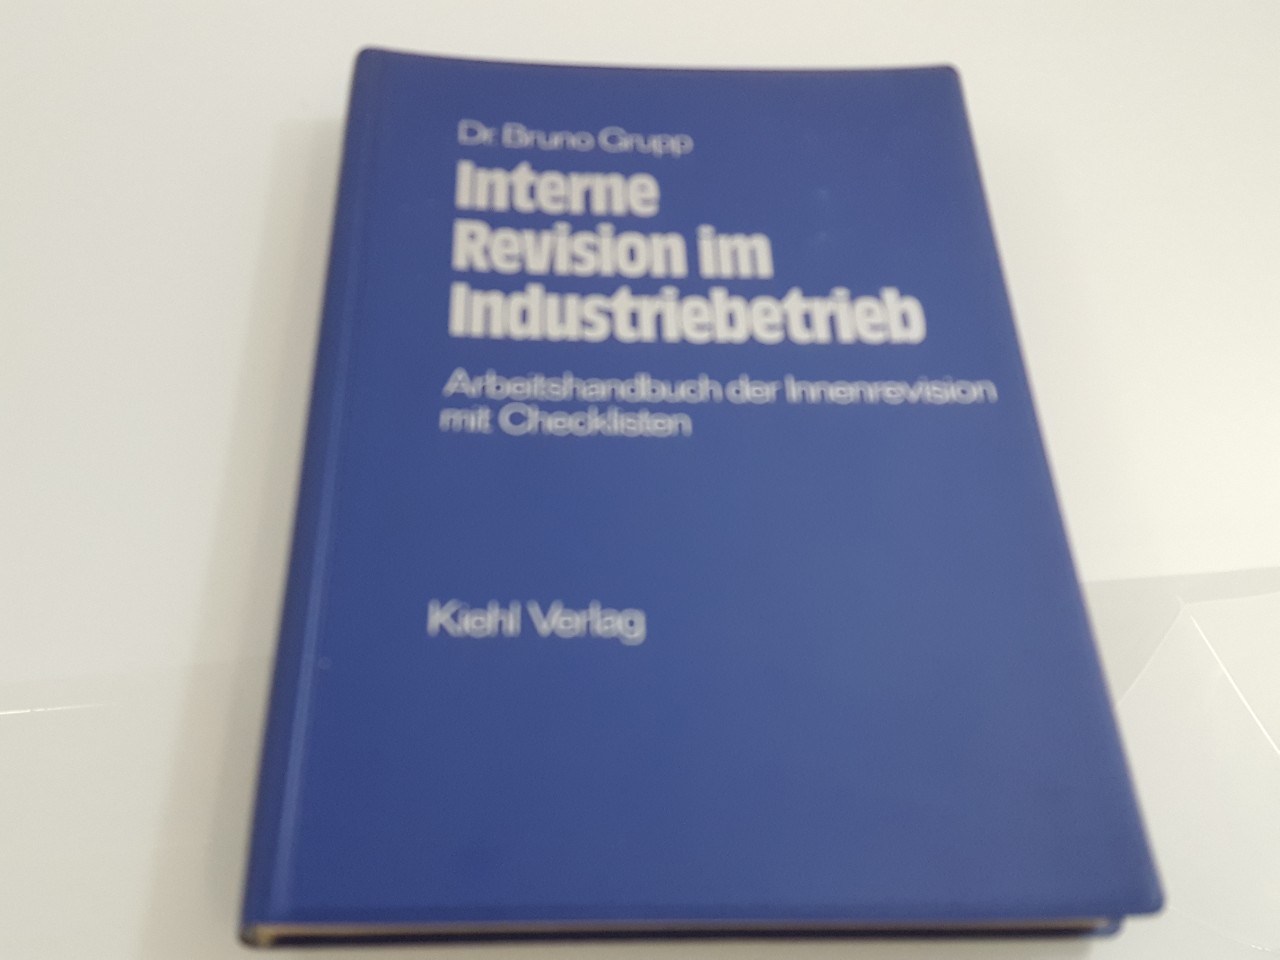 Interne Revision im Industriebetrieb : Arbeitshandbuch d. Innenrevision mit Checklisten / von Bruno Grupp - Grupp, Bruno